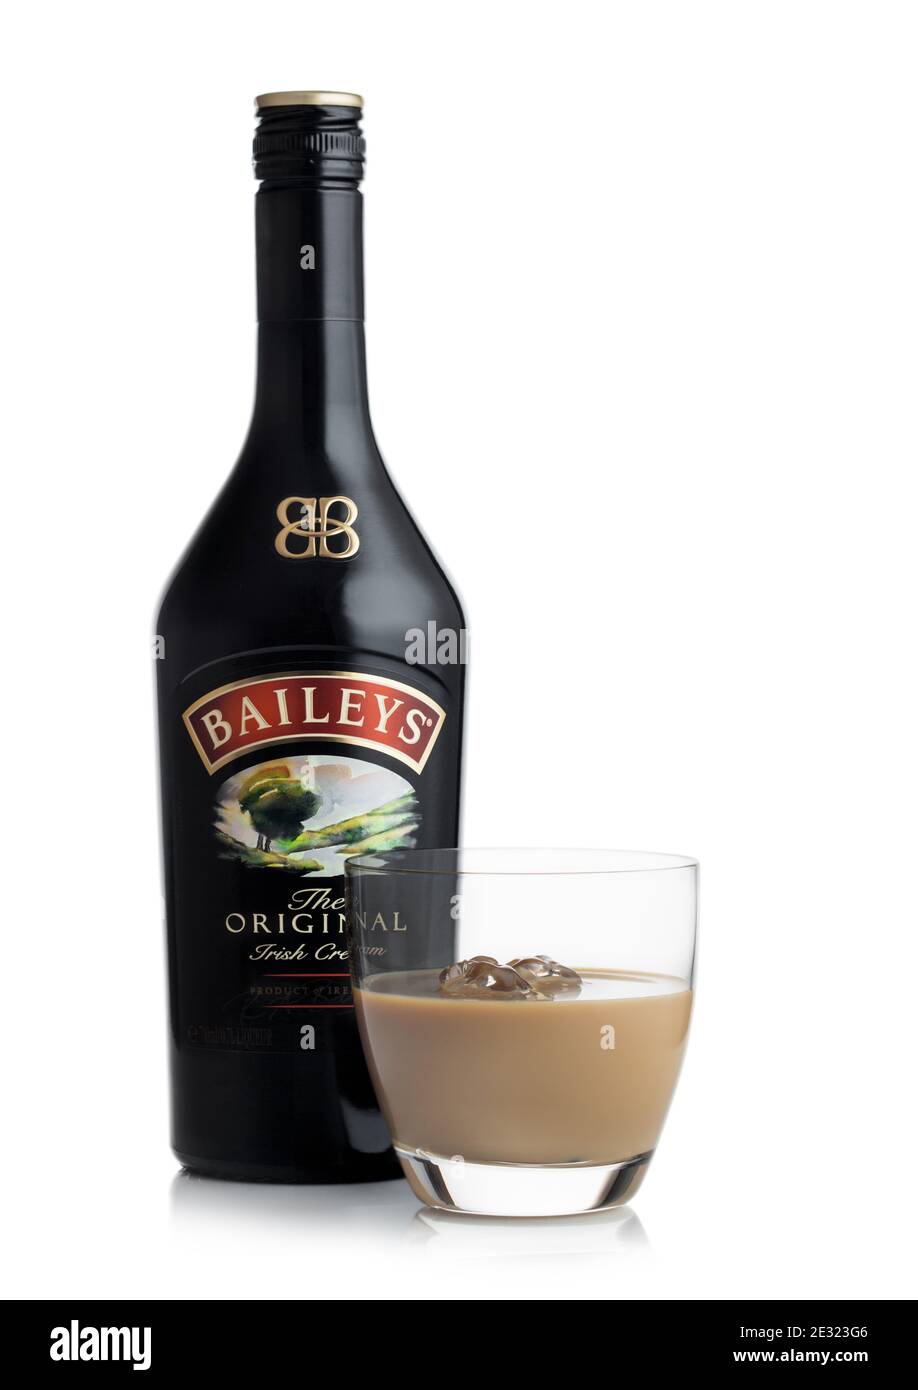 LONDRA, UK - 02 GIUGNO 2020: Bottiglia e bicchiere di Baileys Original  Irish Cream su sfondo bianco. Whisky irlandese e liquore a base di crema  Foto stock - Alamy